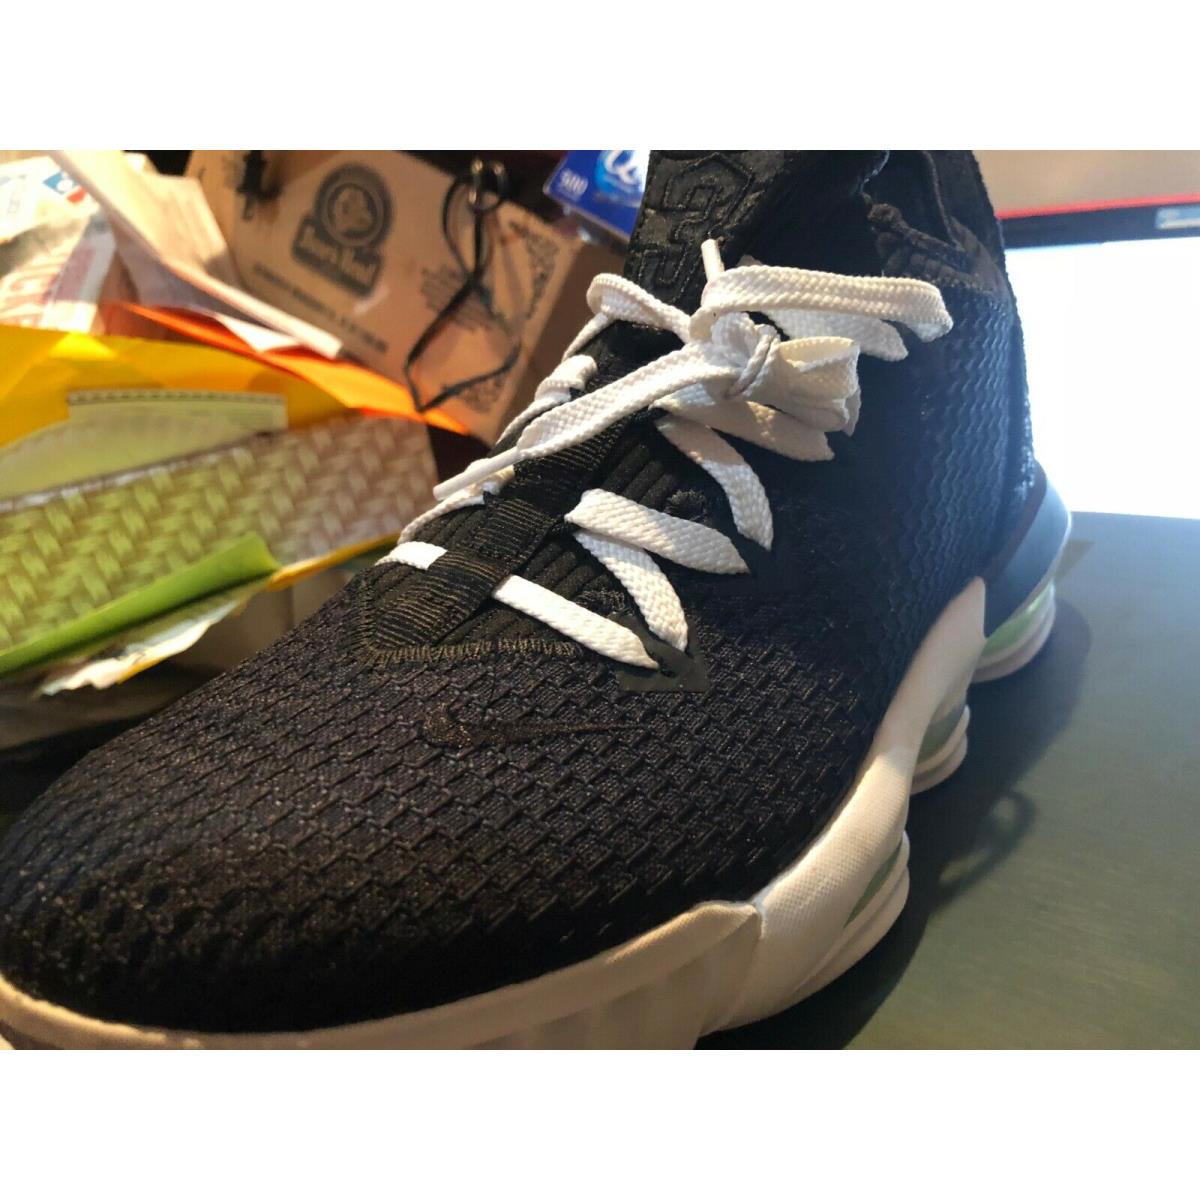 Nike shoes LeBron XVI - Black 6